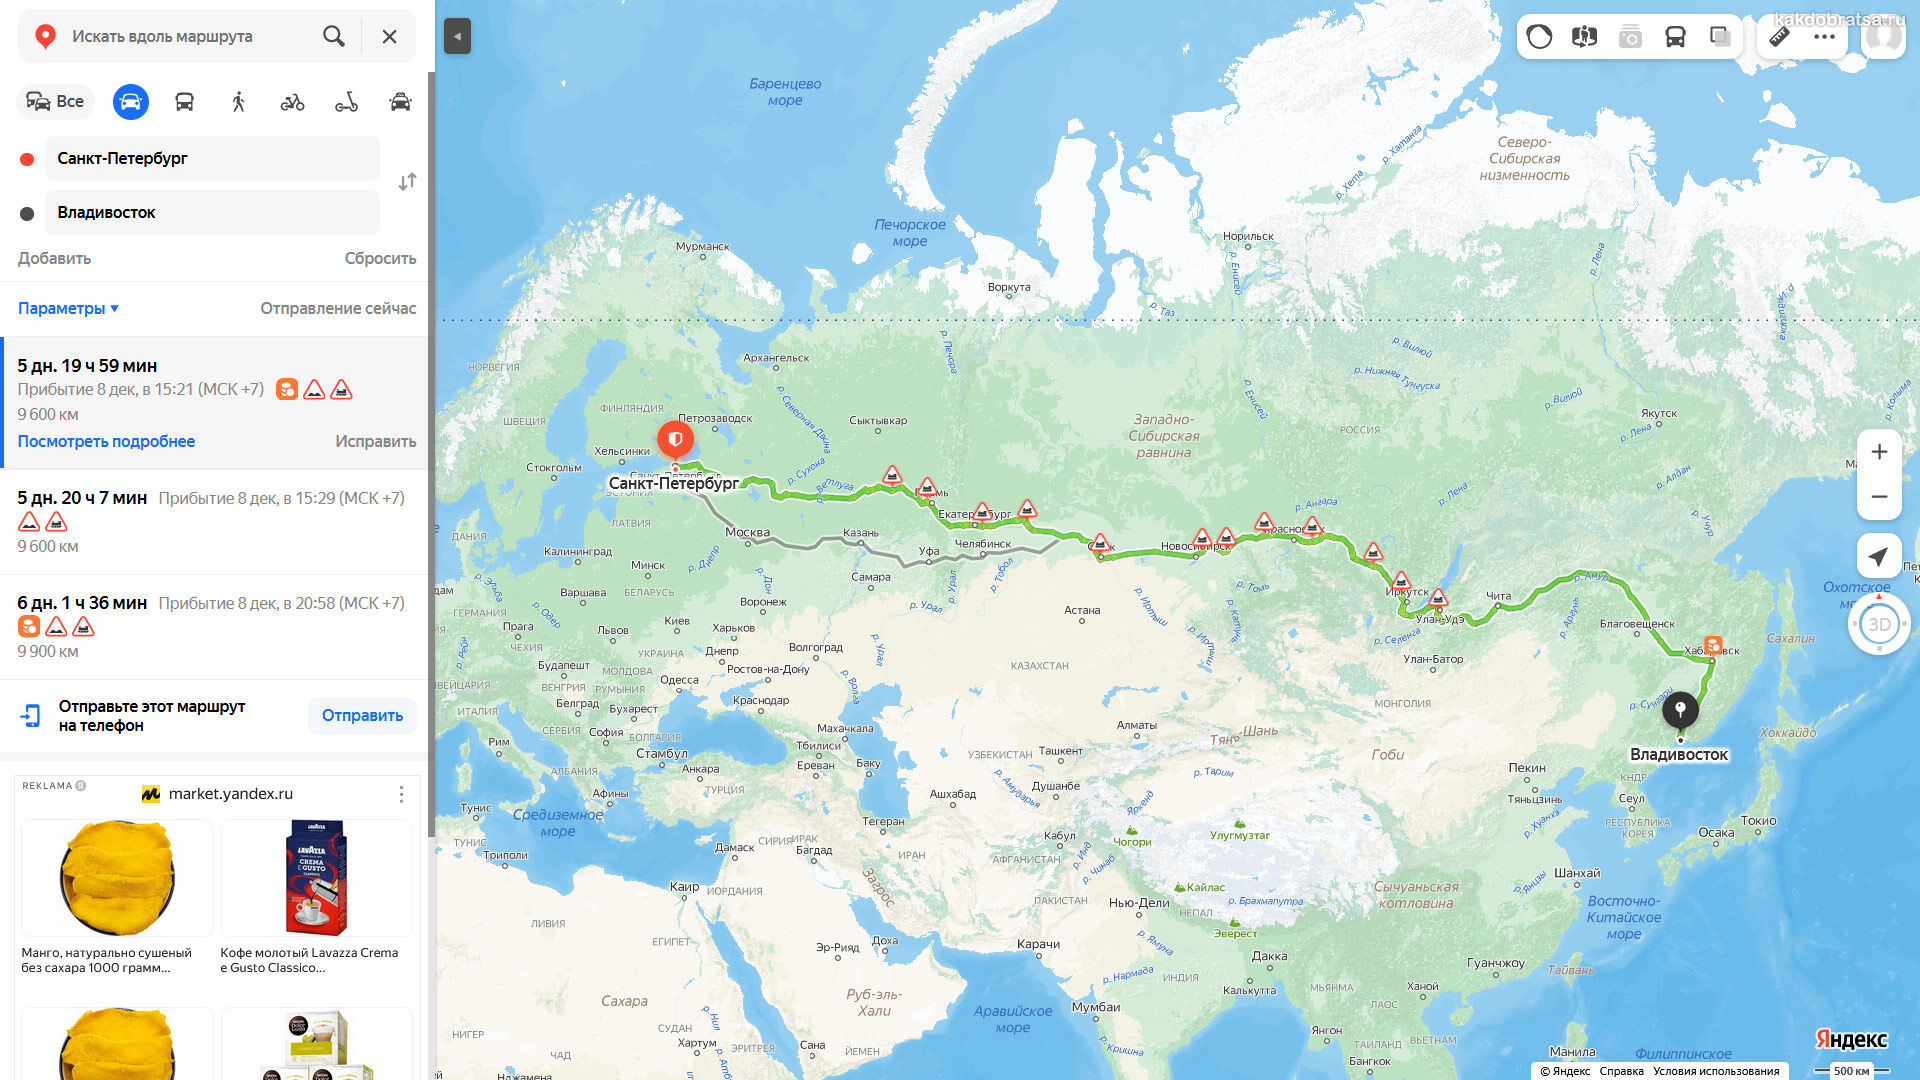 Расстояние от Санкт-Петербурга до Владивостока по карте в км